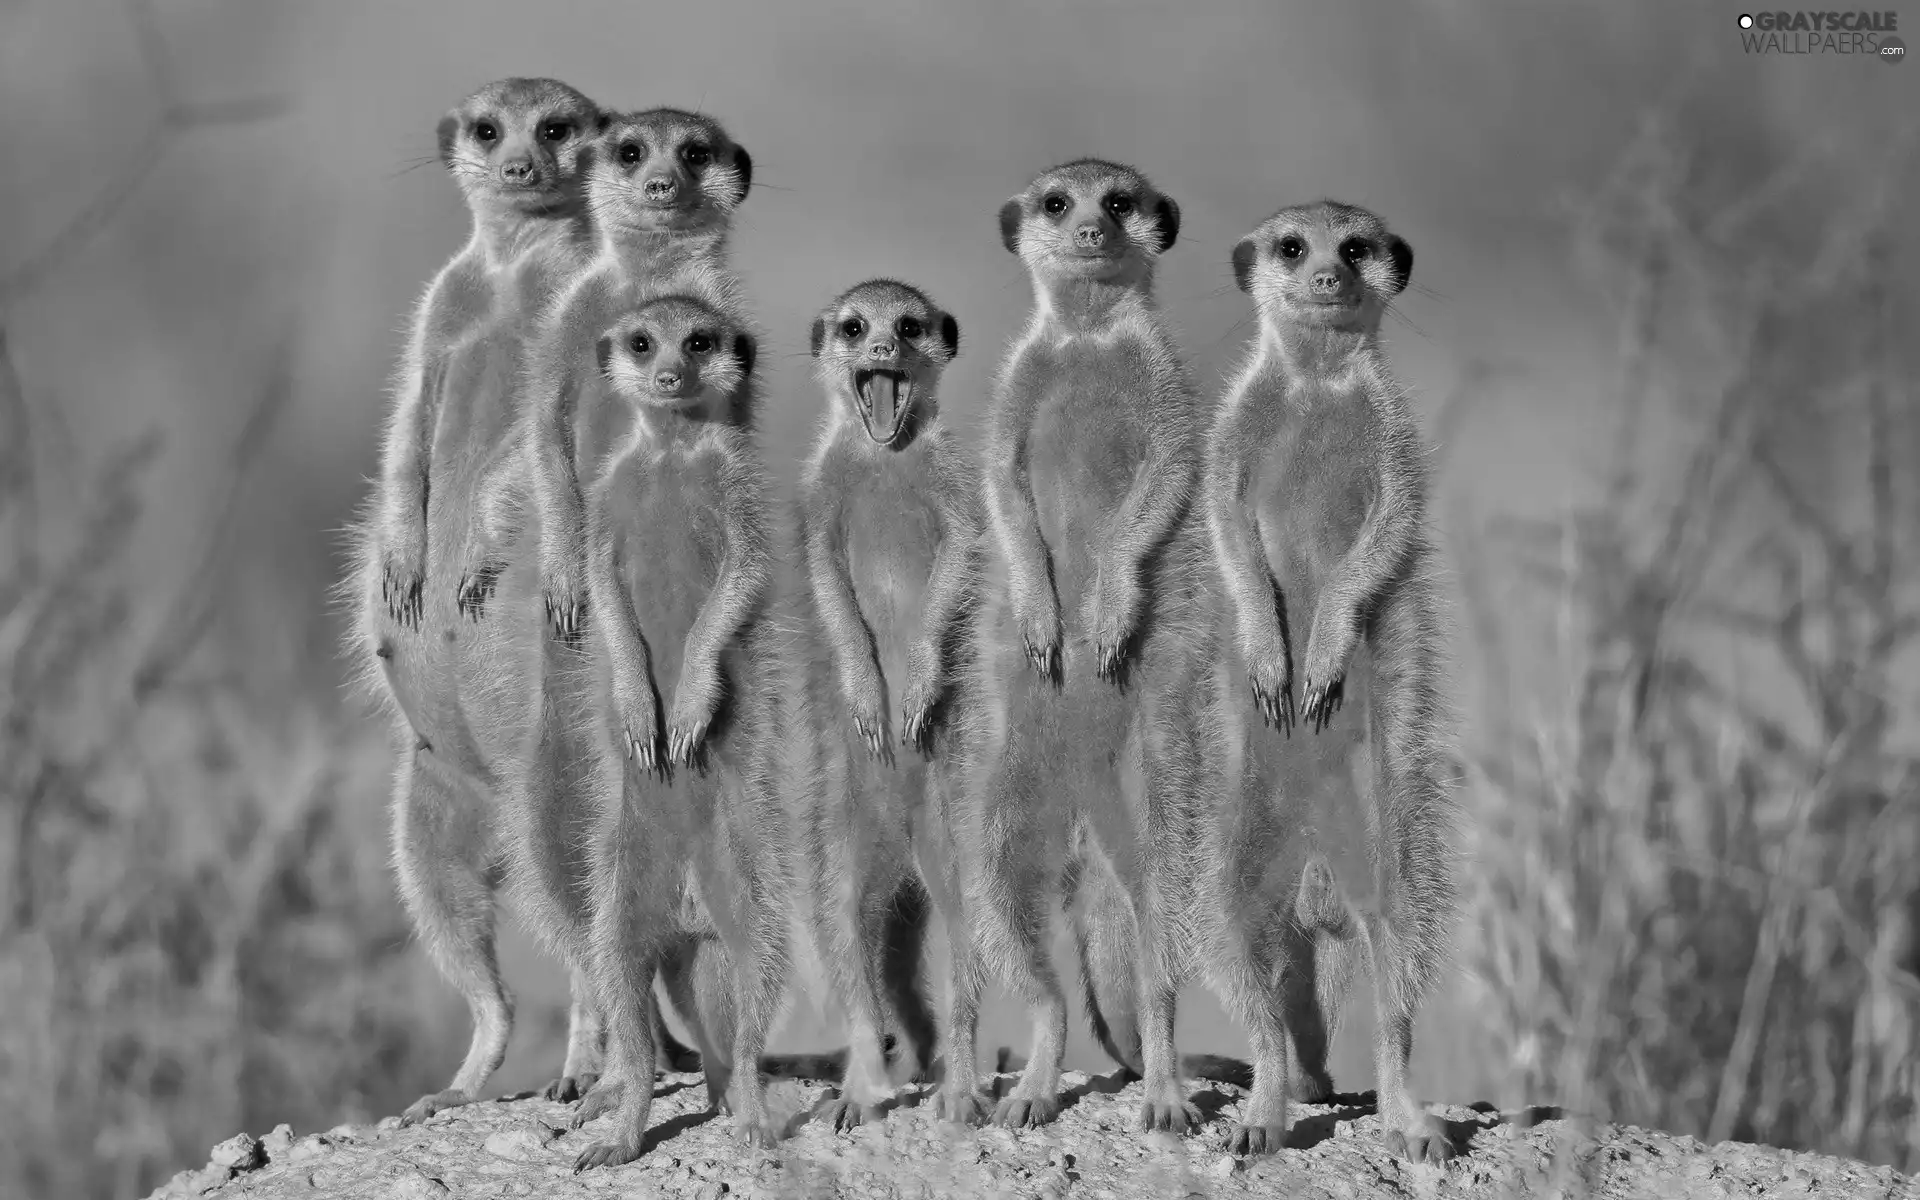 Family, meerkats